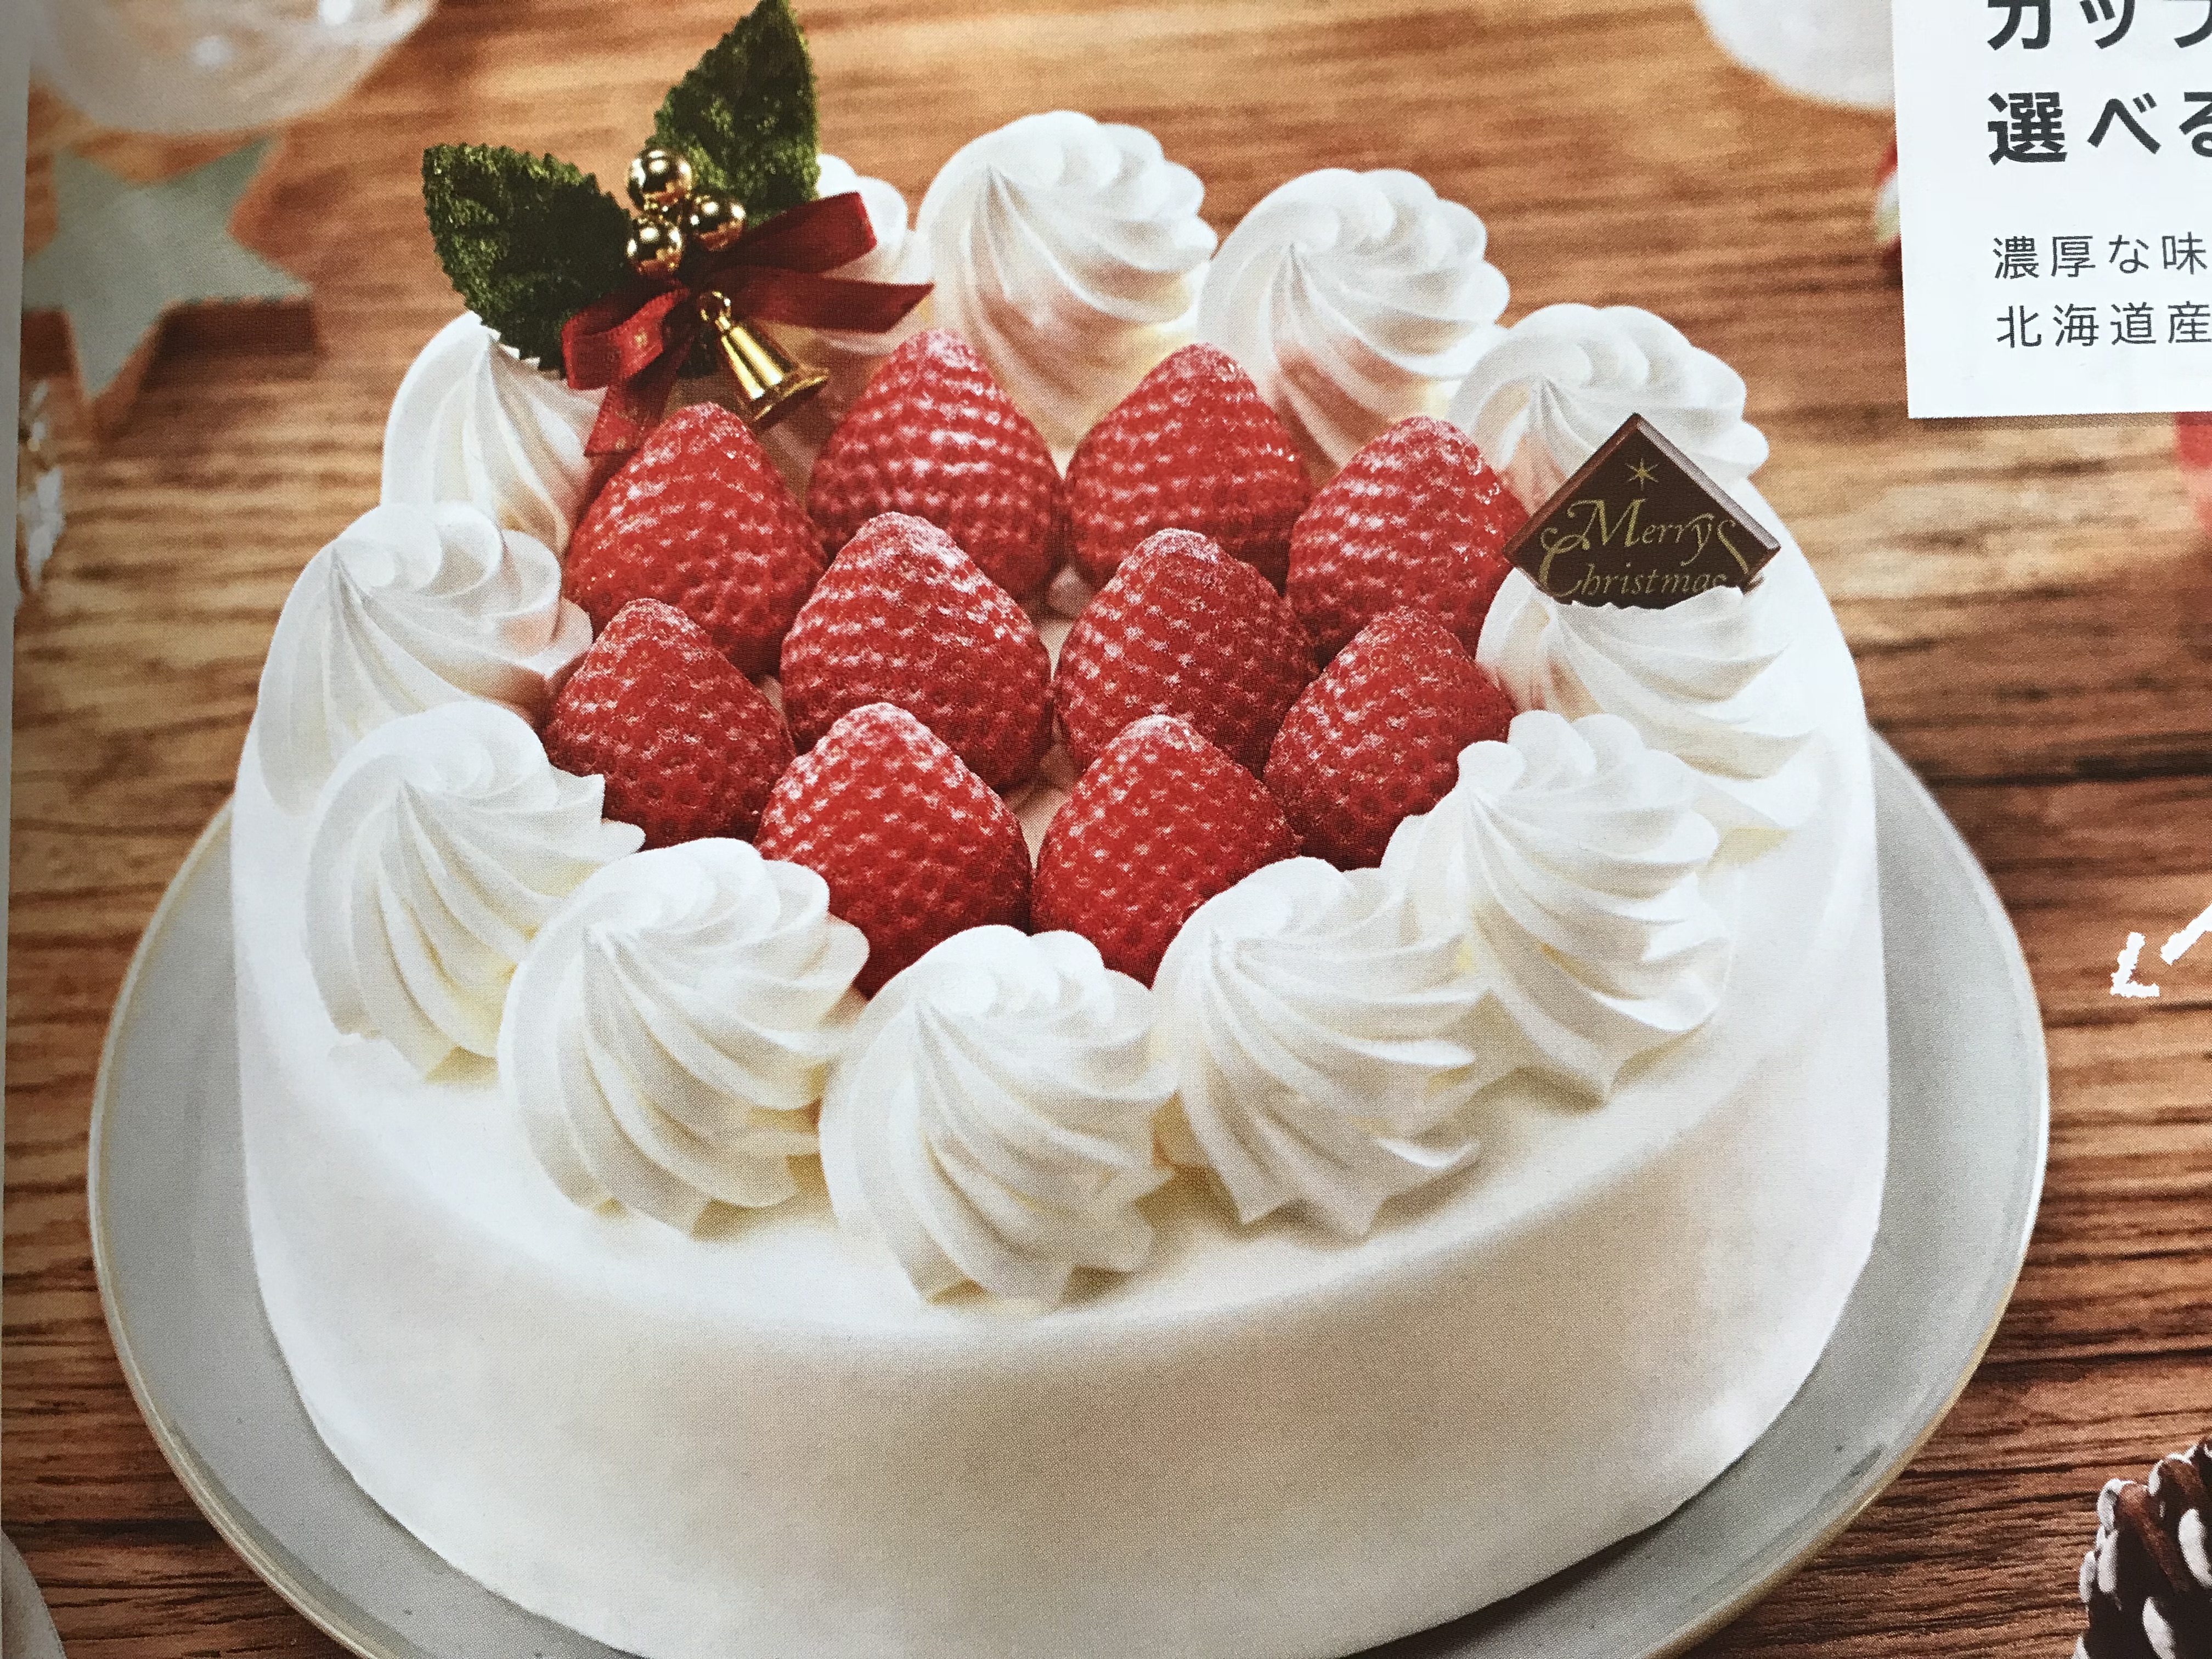 試みる かる 後方 クリスマス ケーキ セブン Yyaegaki Jp